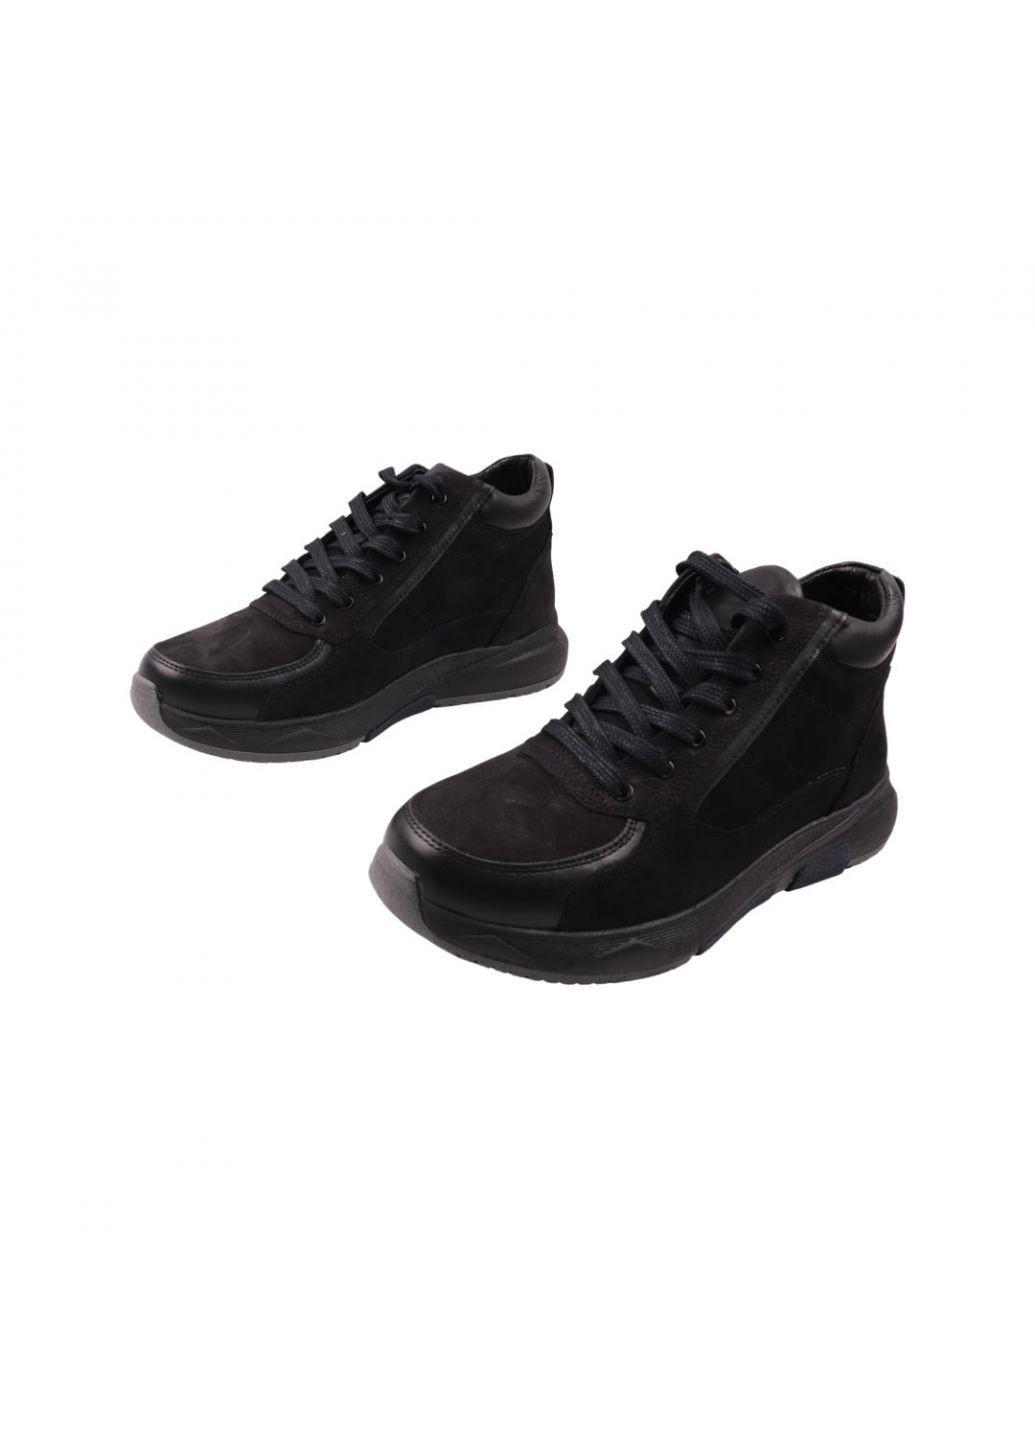 Черные ботинки мужские черные натуральная замша Detta